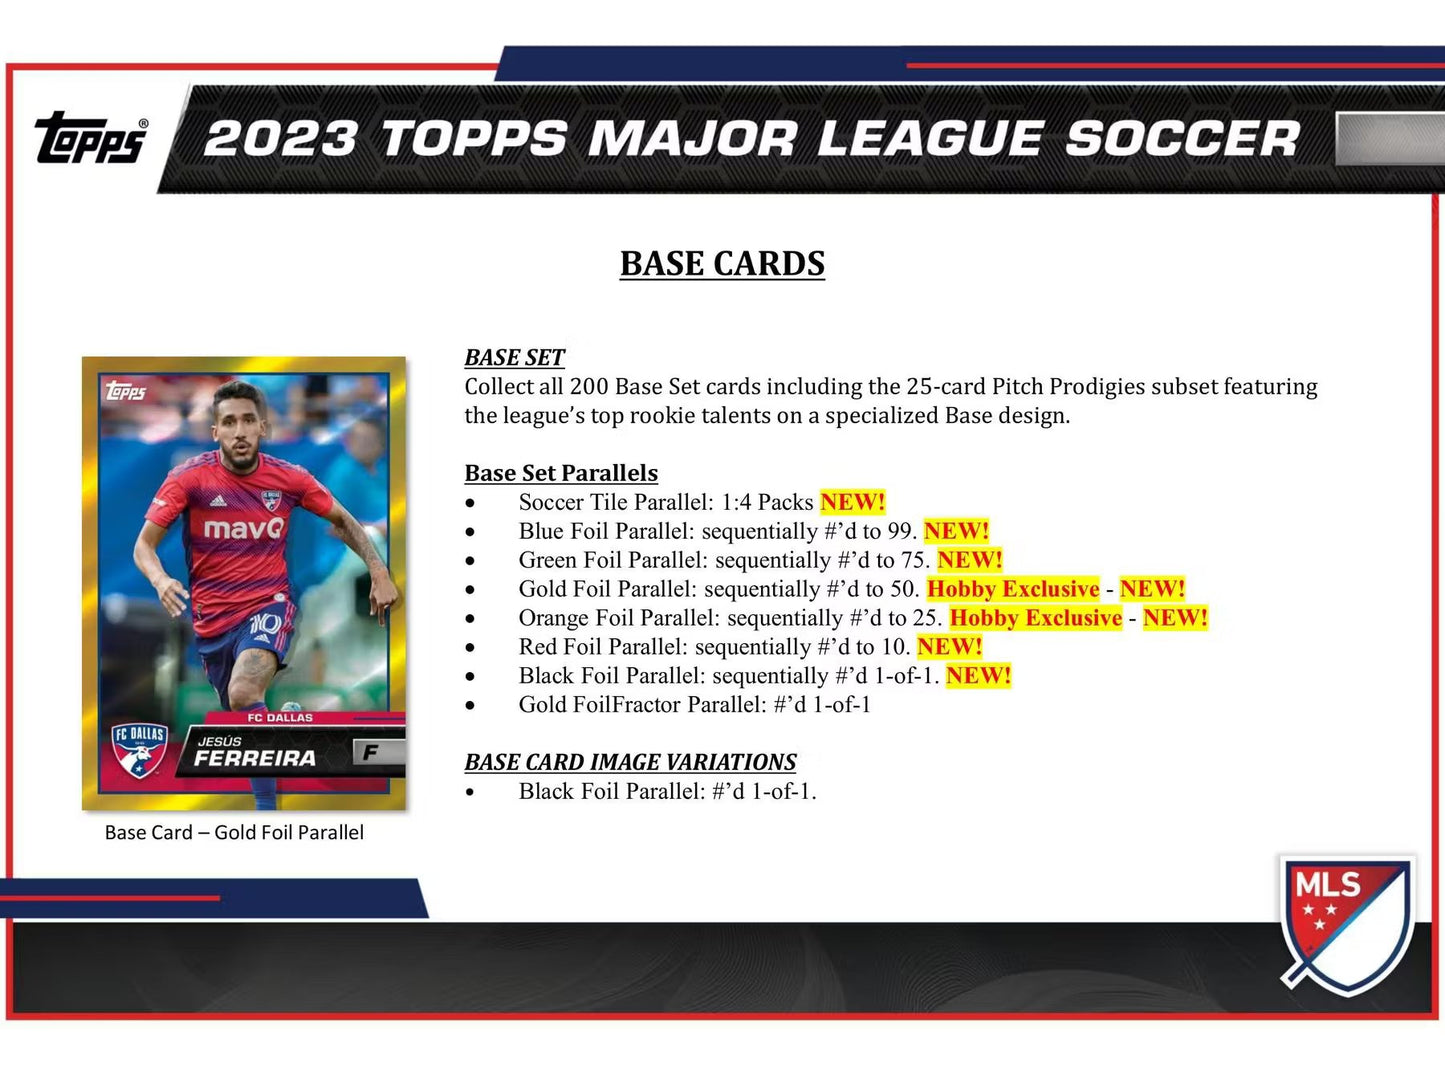 2023 Topps MLS Major League Soccer Hobby Box